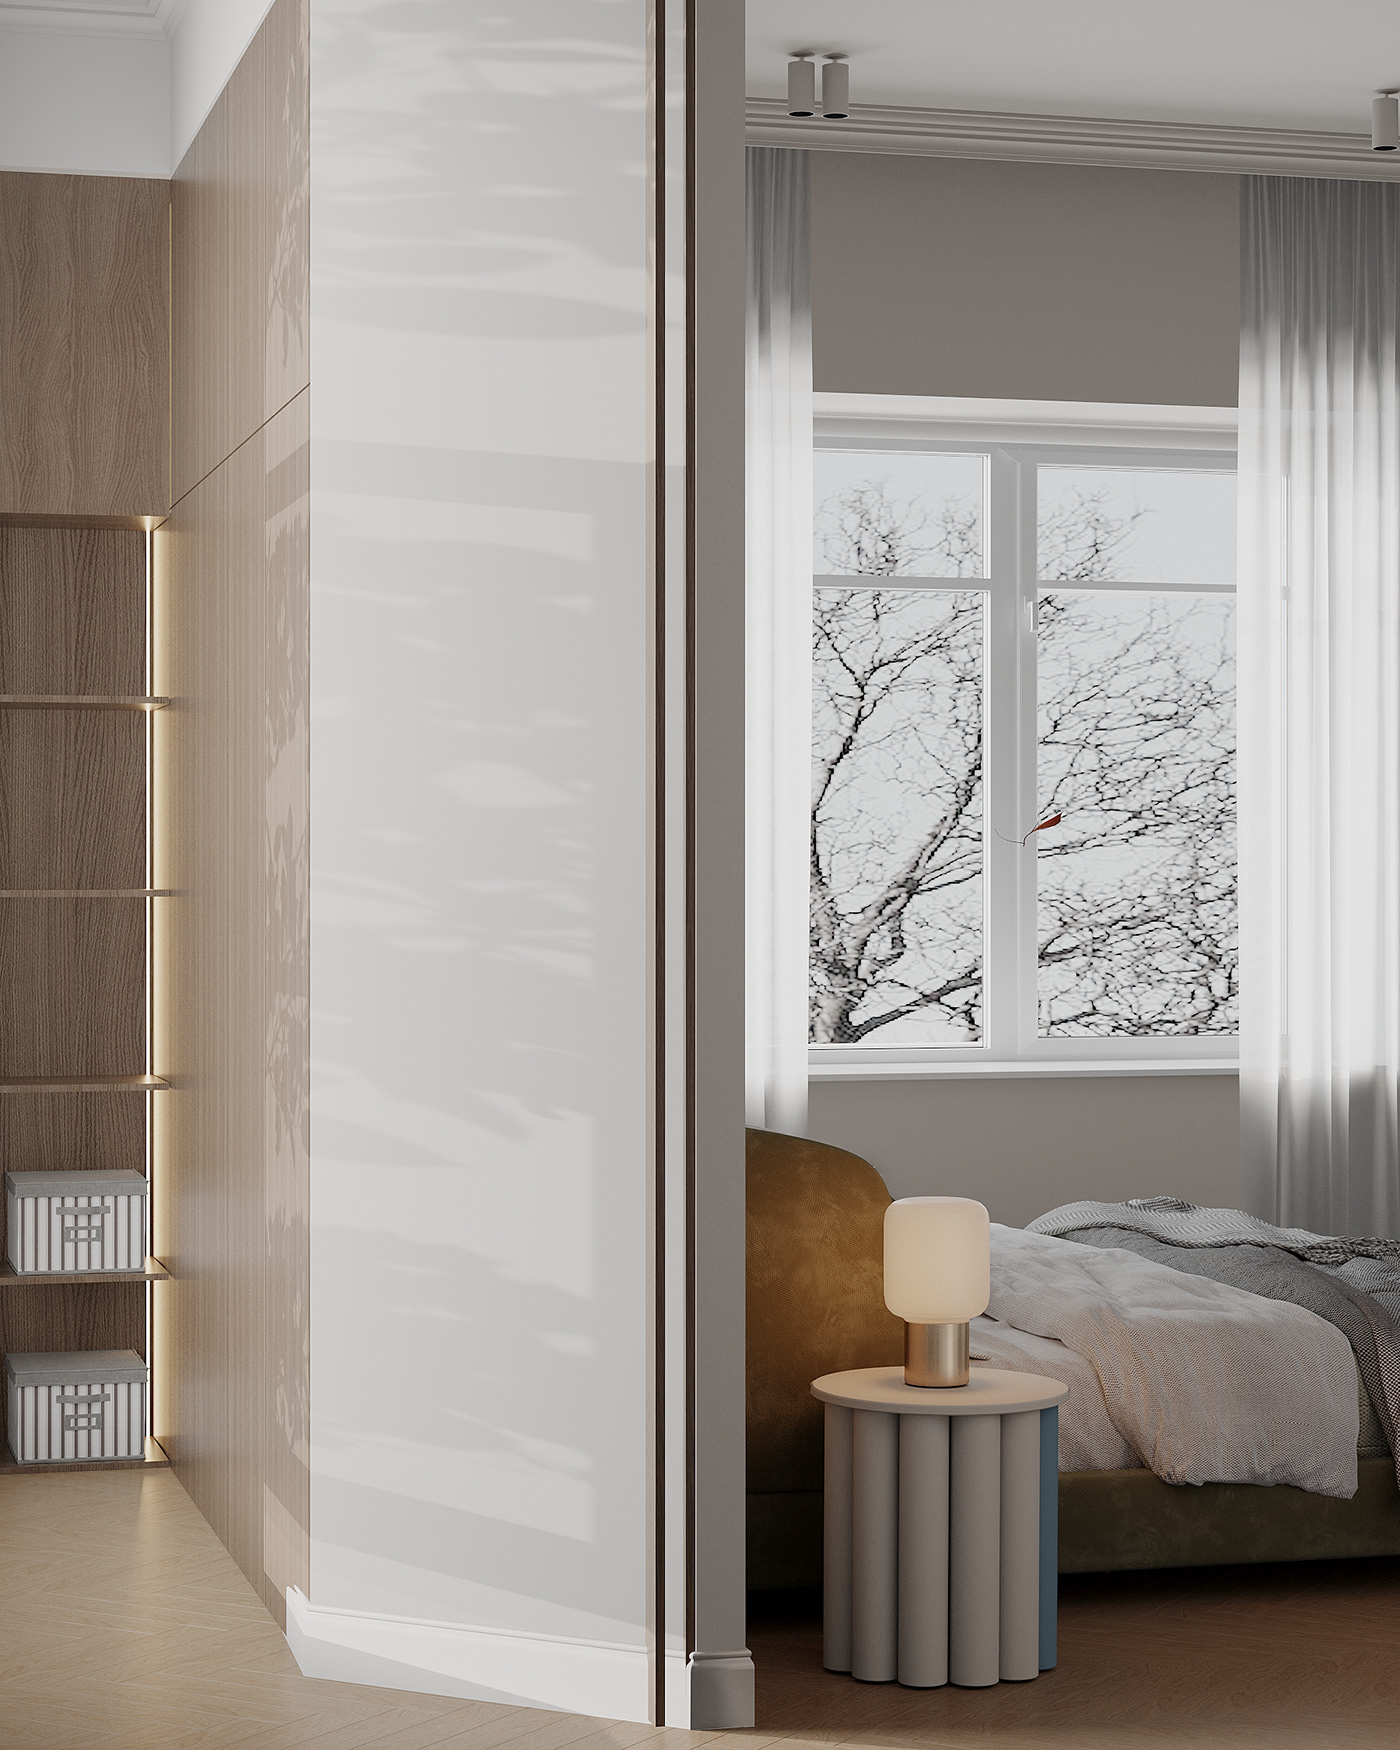 3ds max architecture bedroom corona interior design  visualization